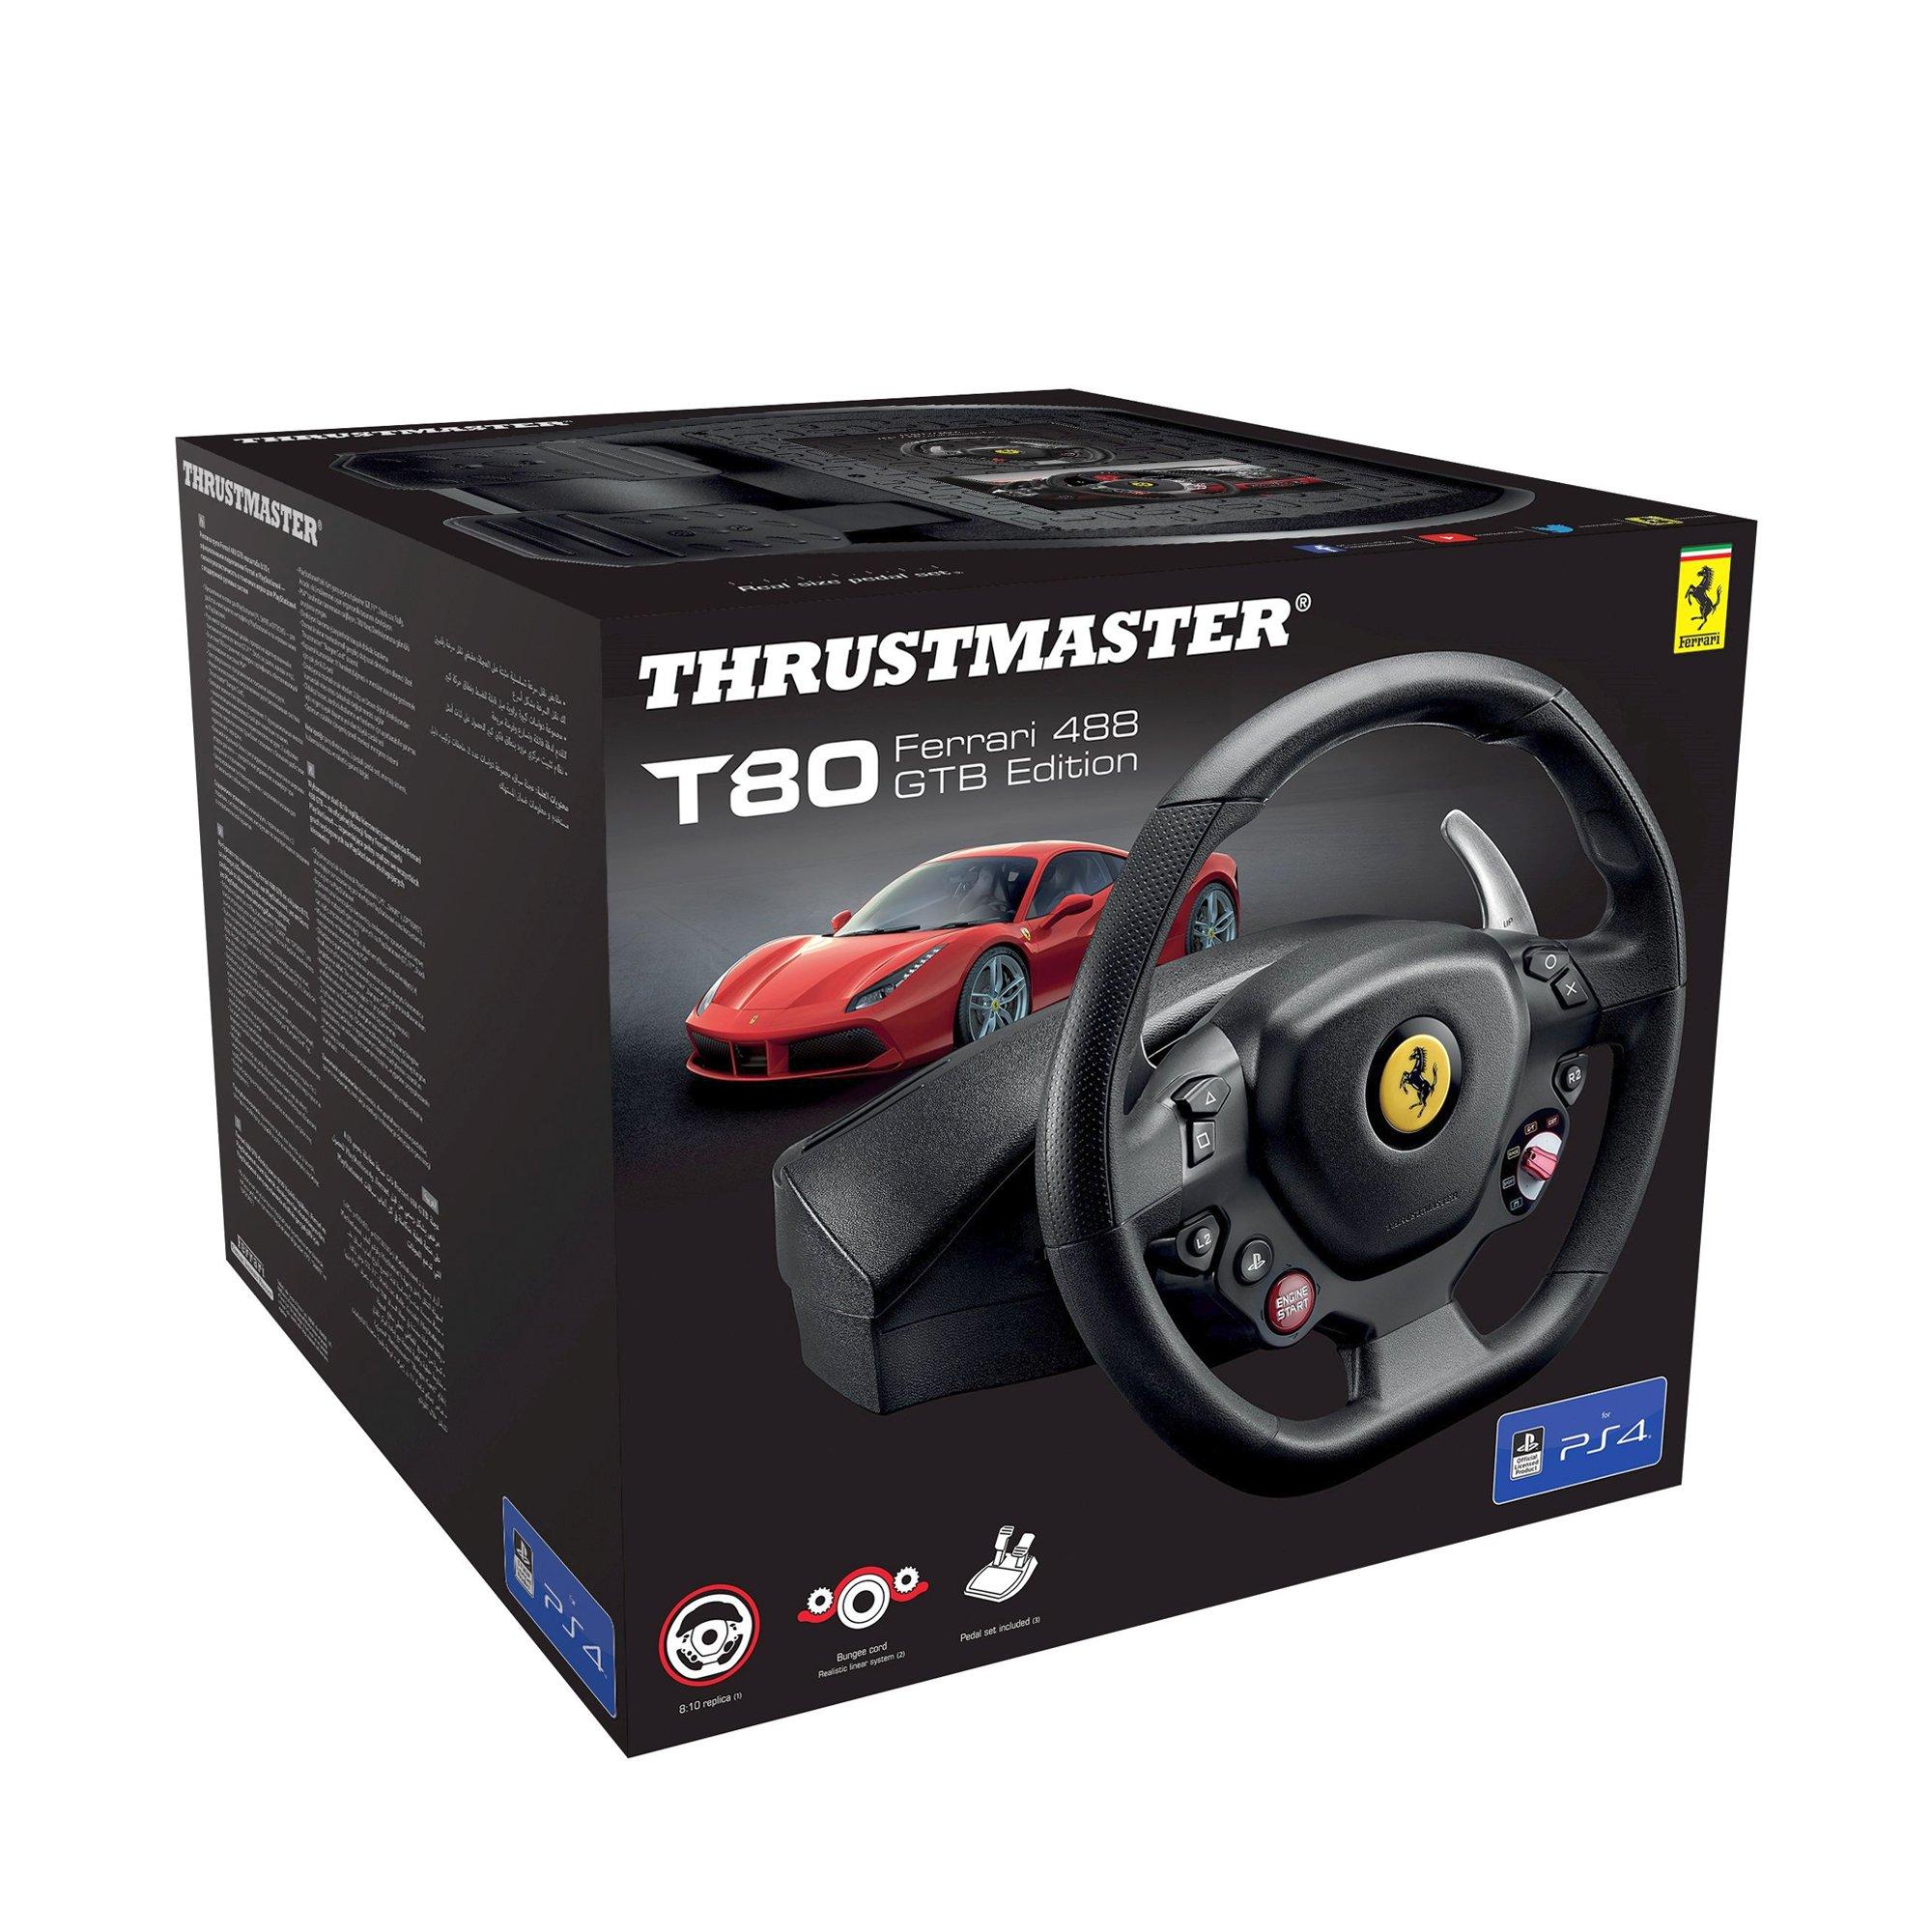 Thrustmaster - Volant T80 Ferrari 488 GTB Edition - Réplique 8/10 de  l'authentique volant de la Ferrari 488 GTB. Pour un réalisme total dans  tous les